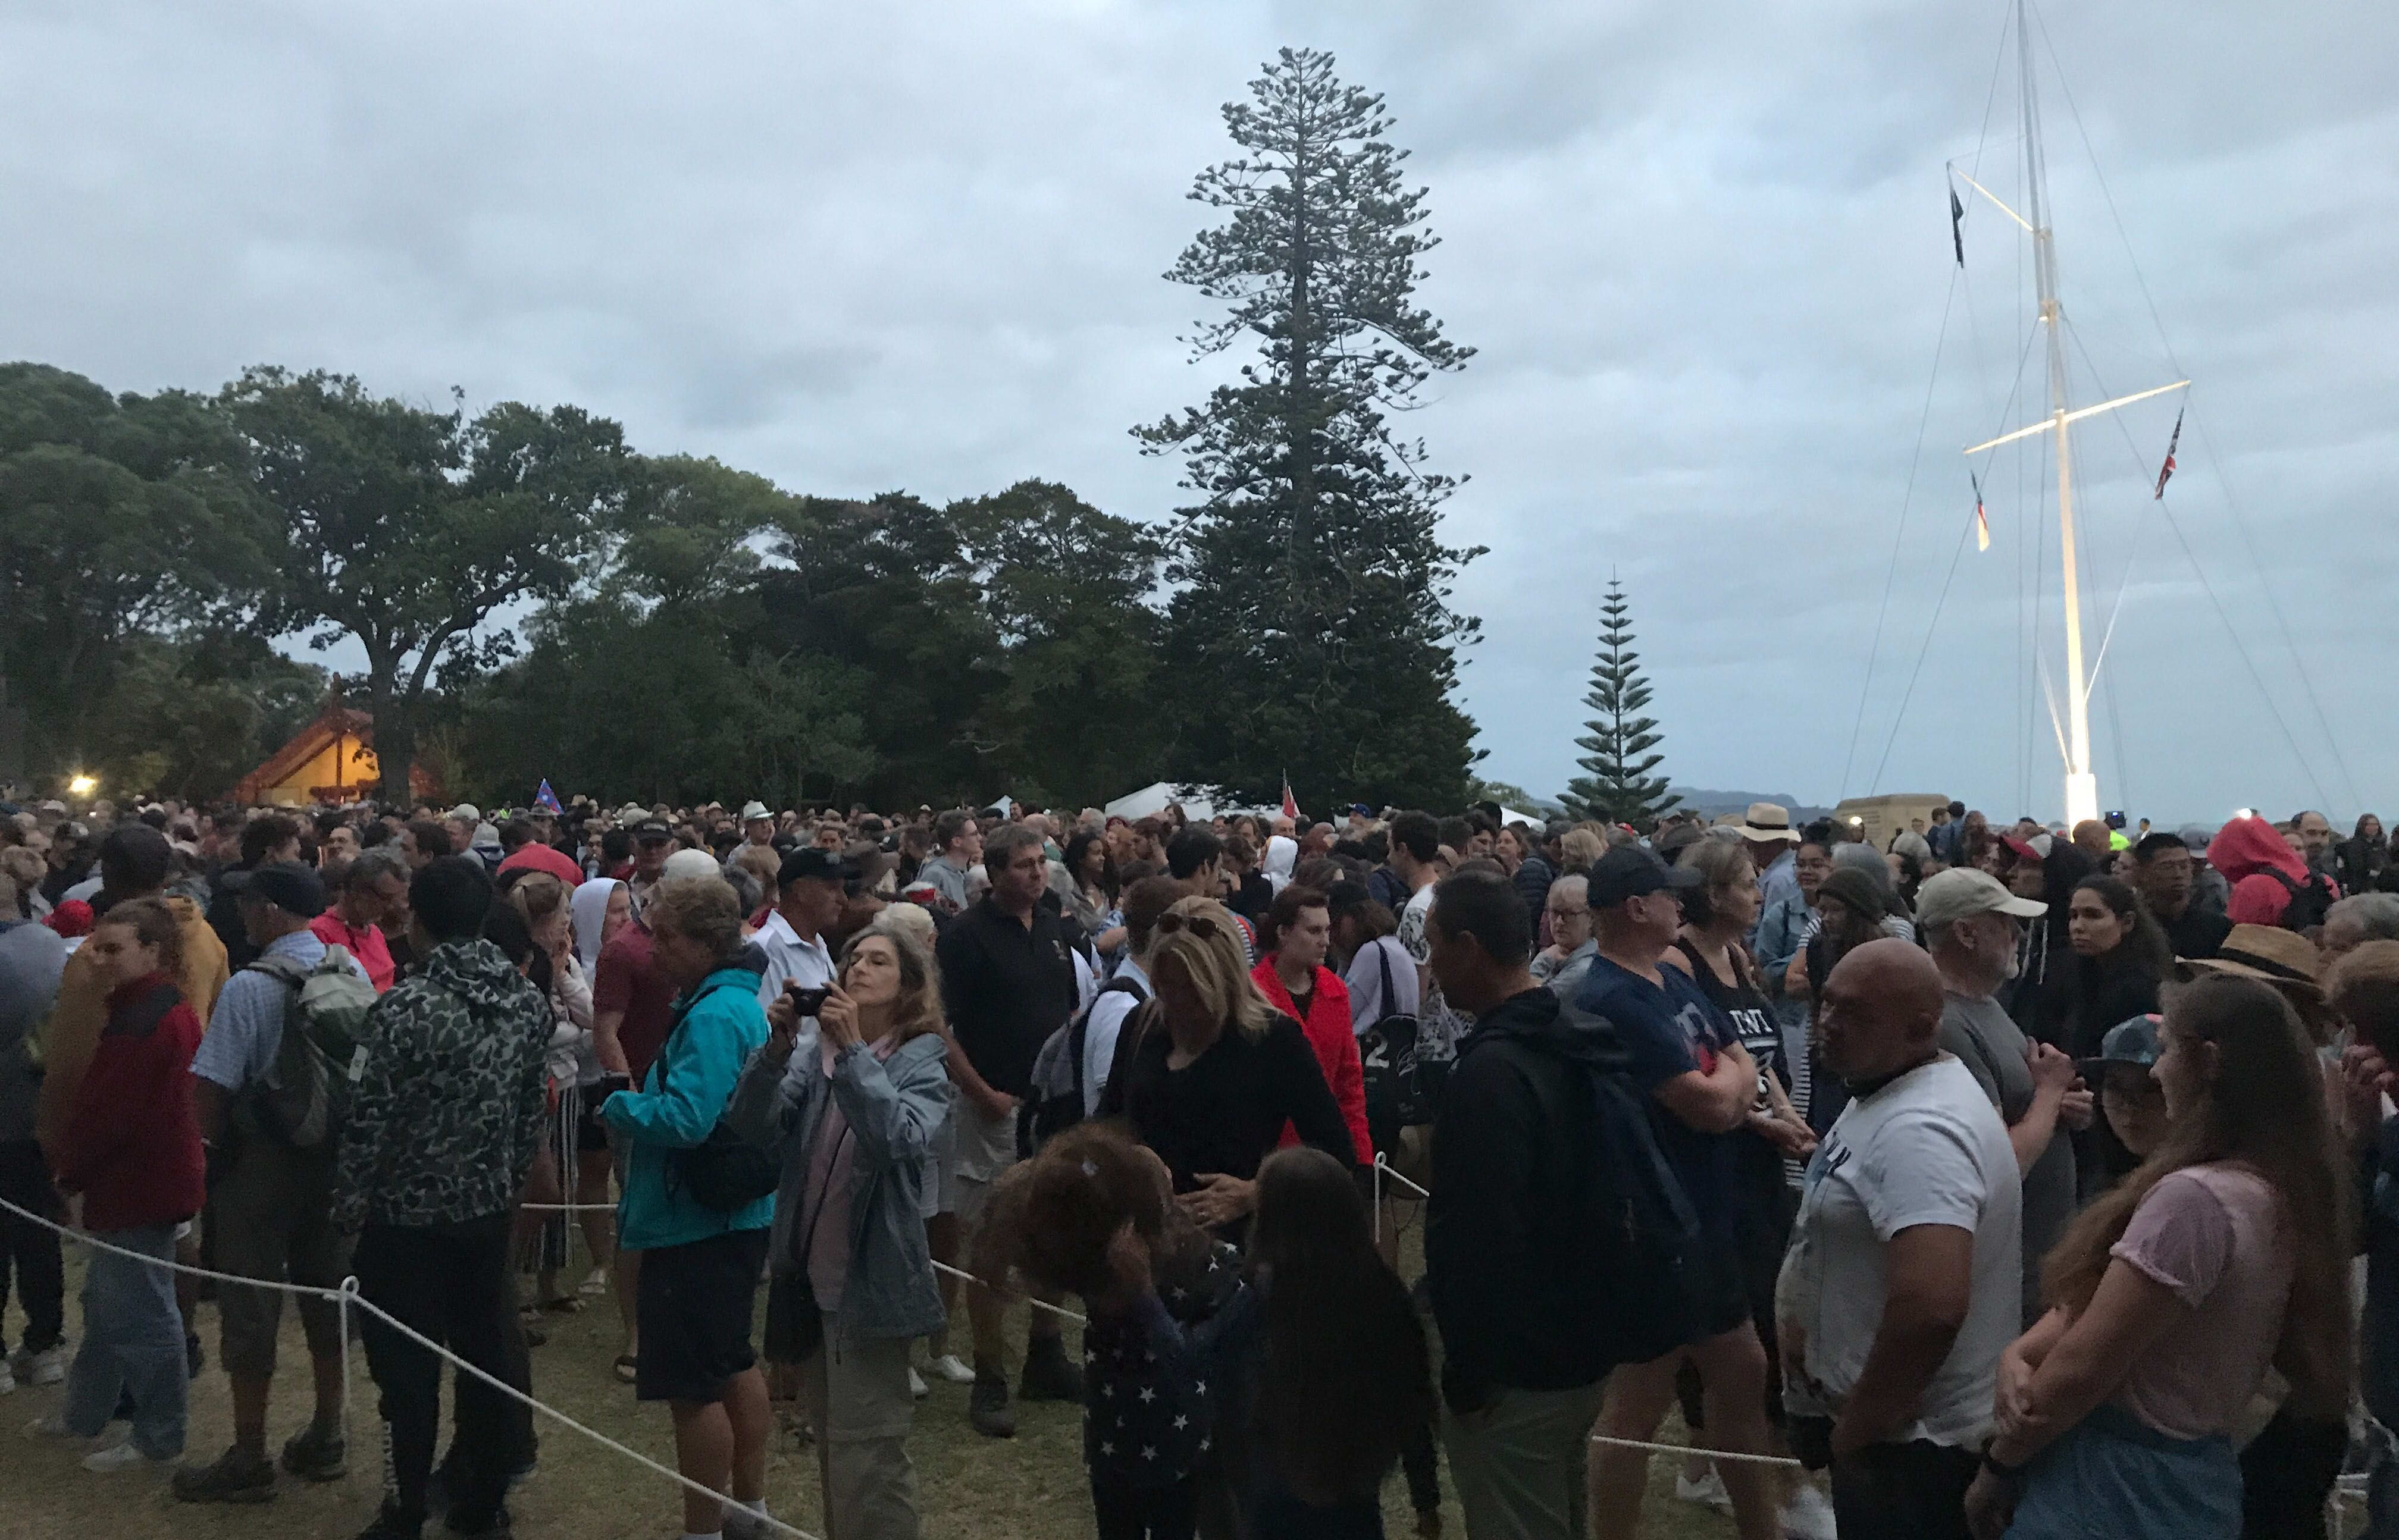 Large crowds gathered at Waitangi.